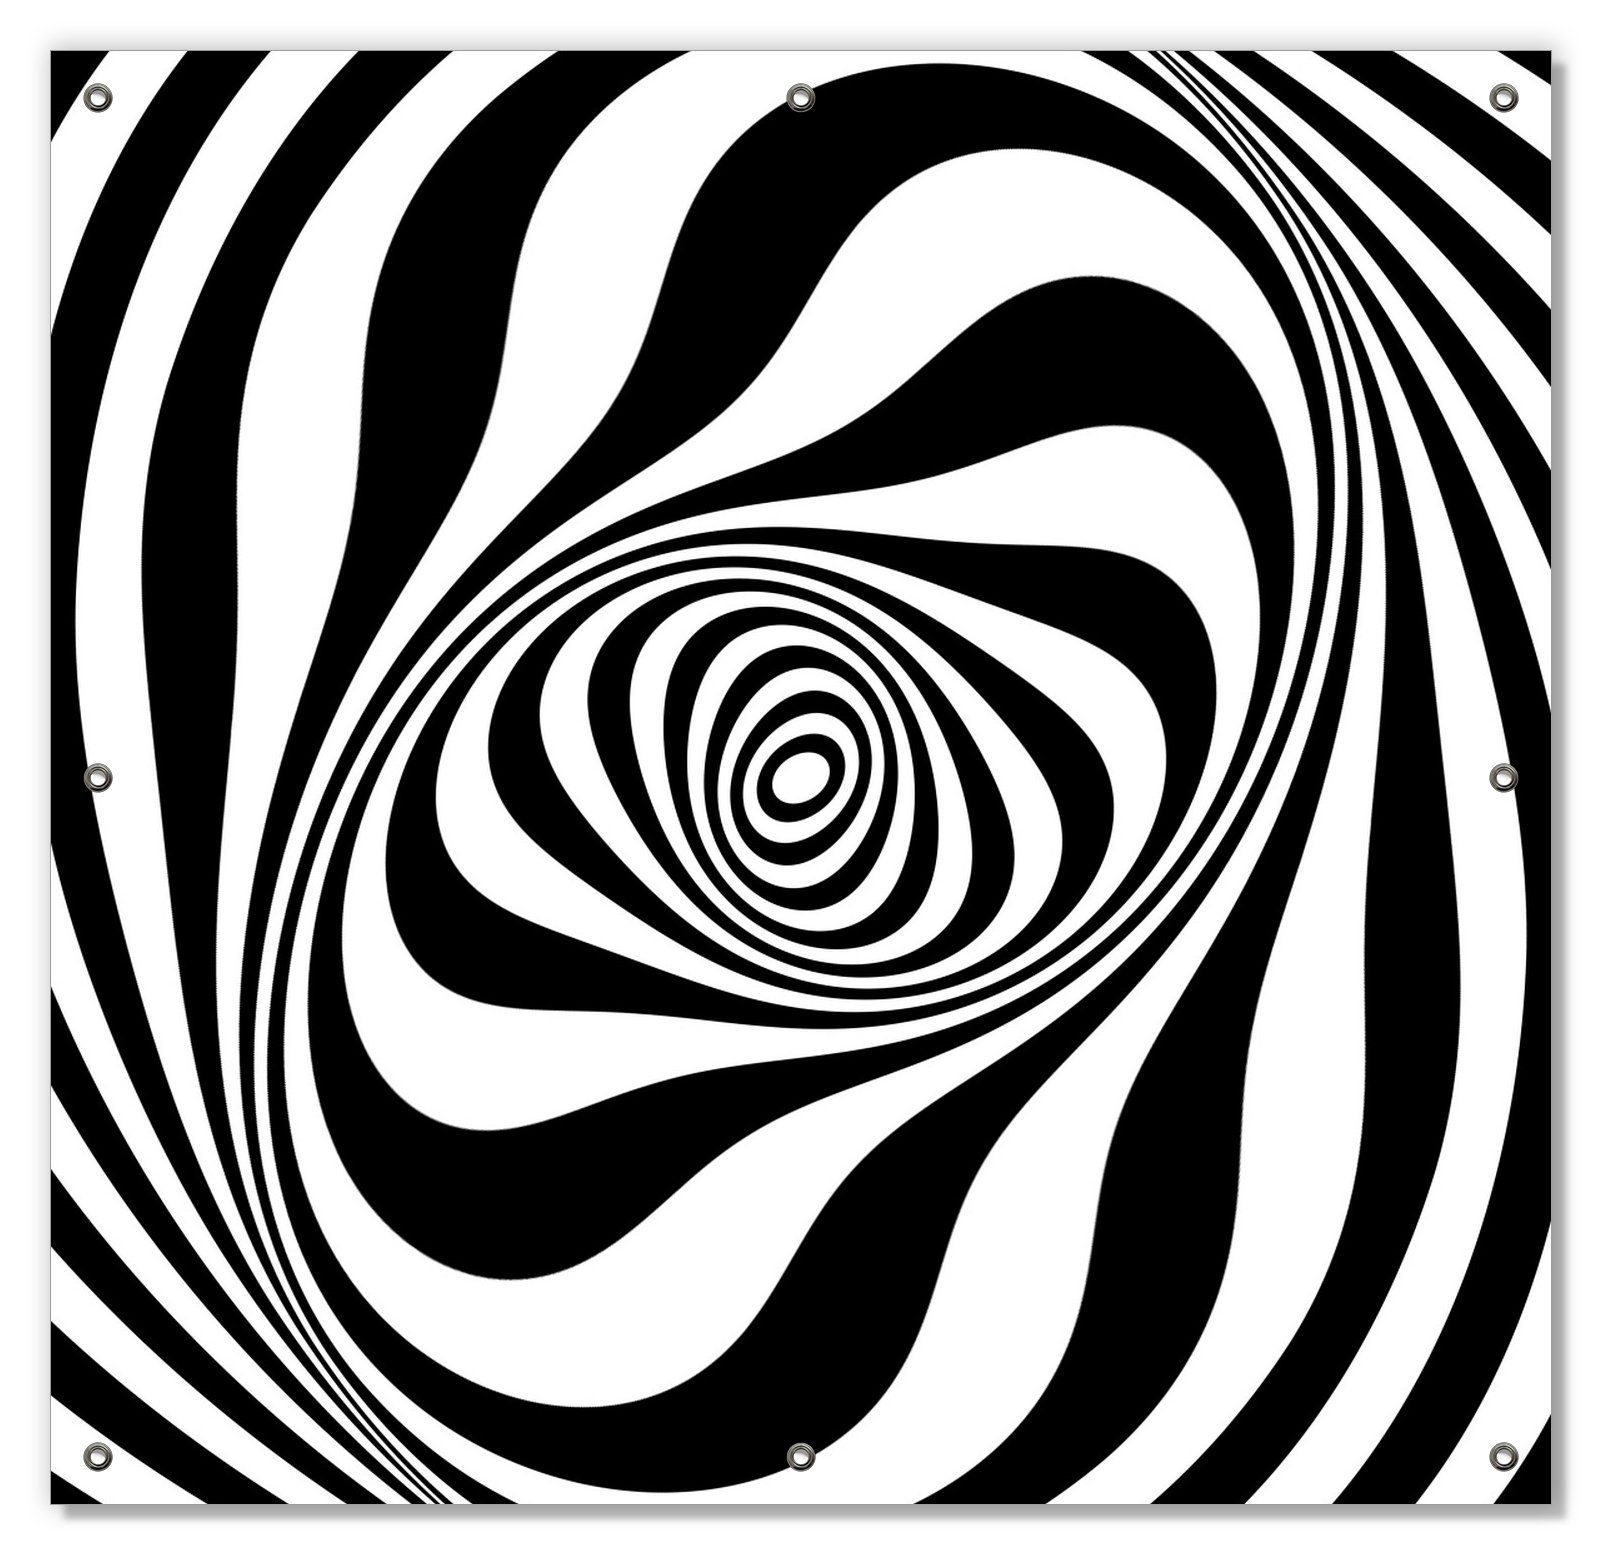 Sonnenschutz Optische Täuschung - Zebra Muster - schwarz weiß, Wallario, blickdicht, mit Saugnäpfen, wiederablösbar und wiederverwendbar